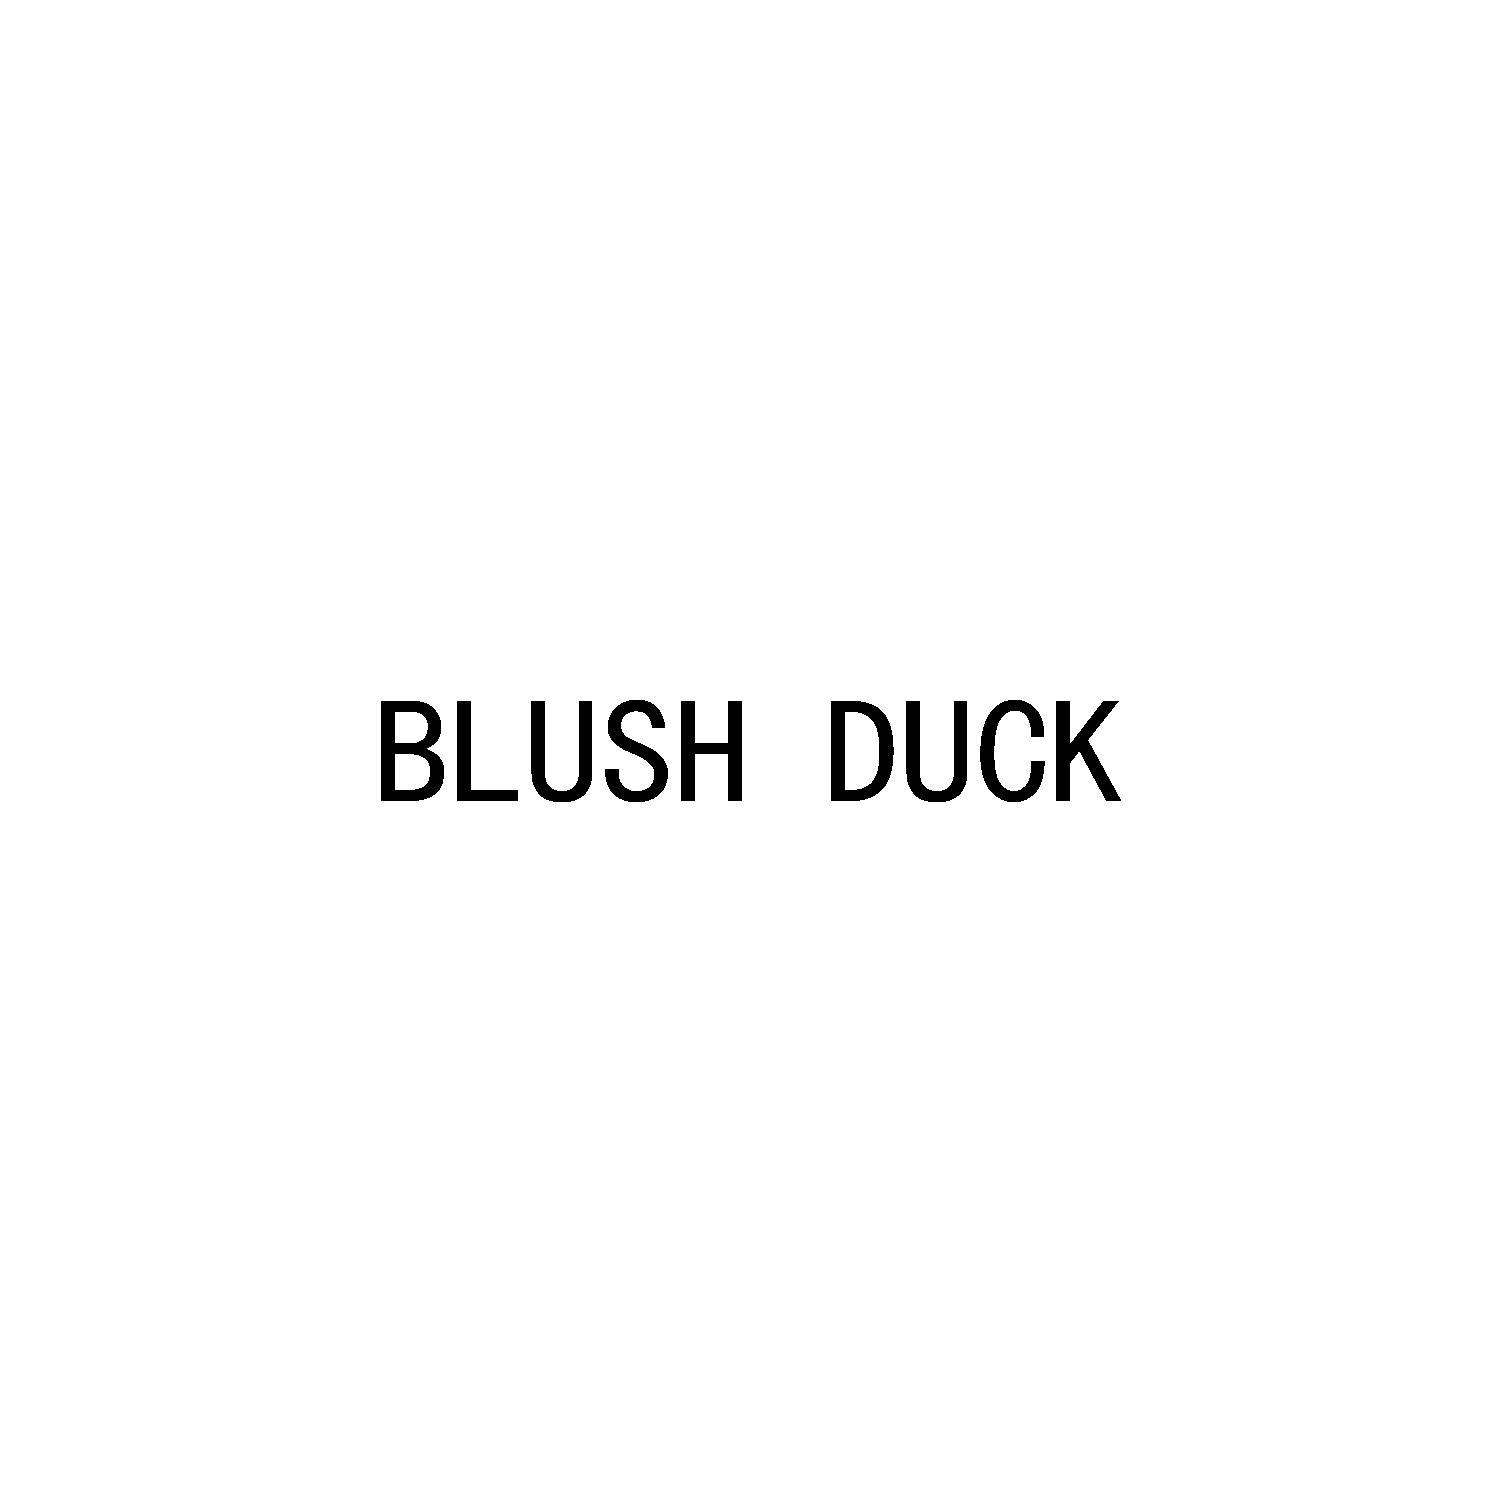 Blush Duck